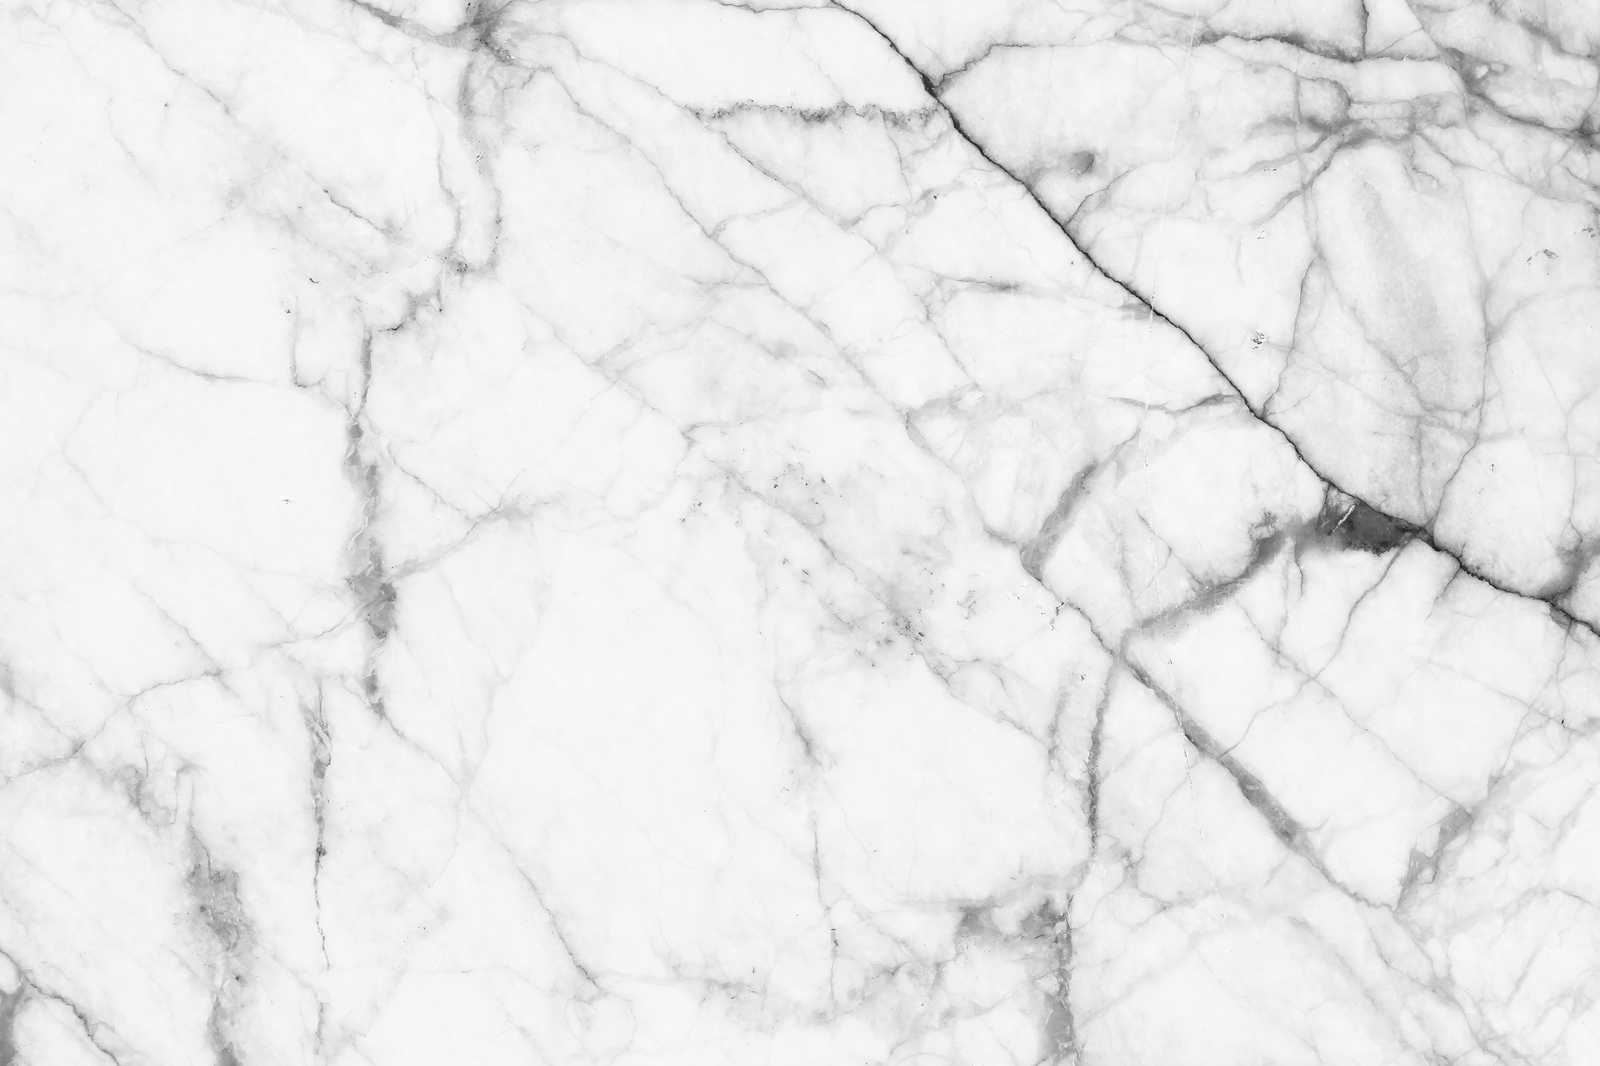             Schwarz-Weiß Leinwandbild Marmor mit natürlichen Details – 1,20 m x 0,80 m
        